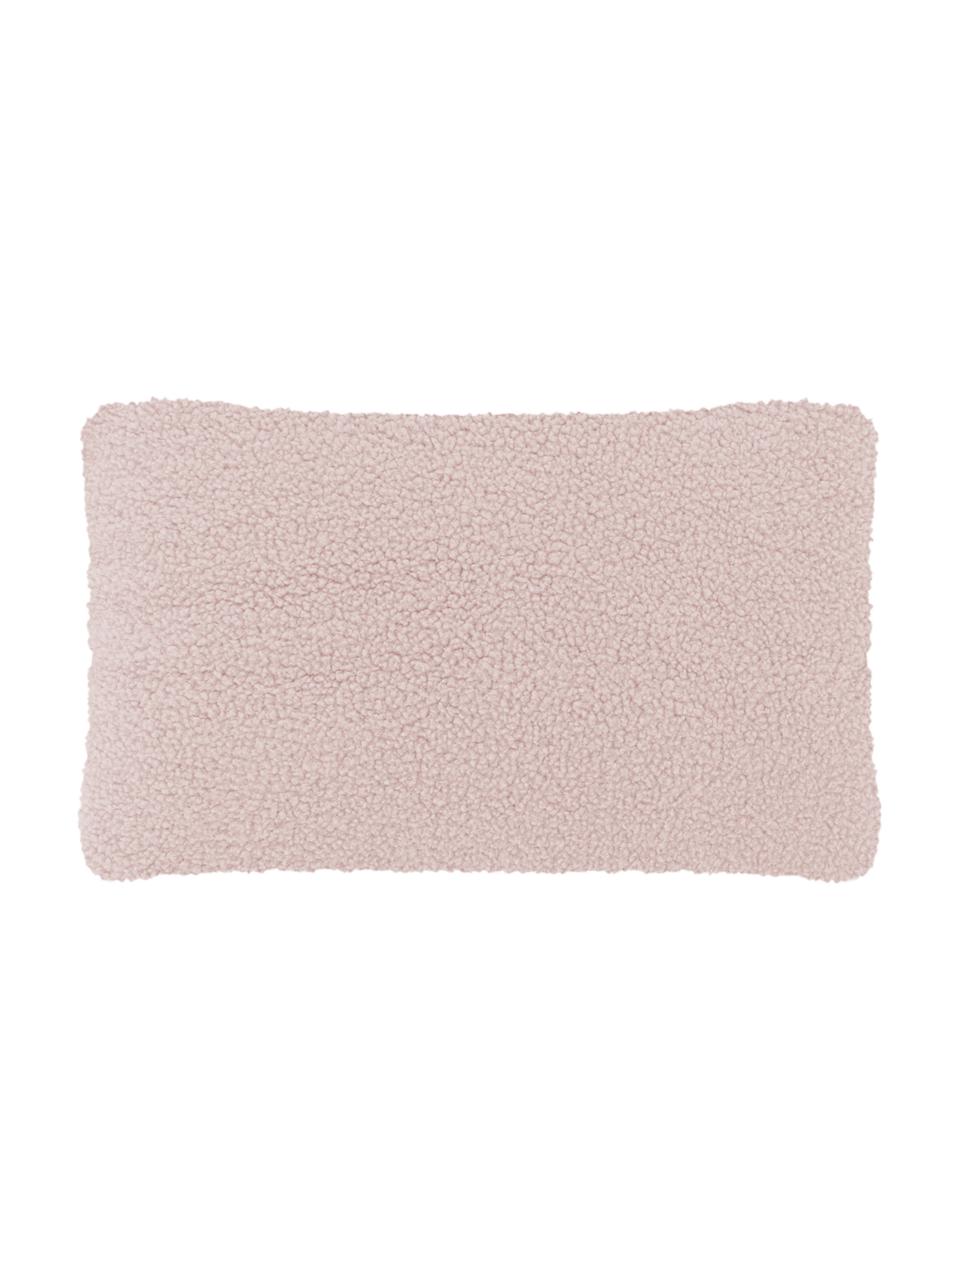 Zachte teddy kussenhoes Mille in roze, Roze, 30 x 50 cm